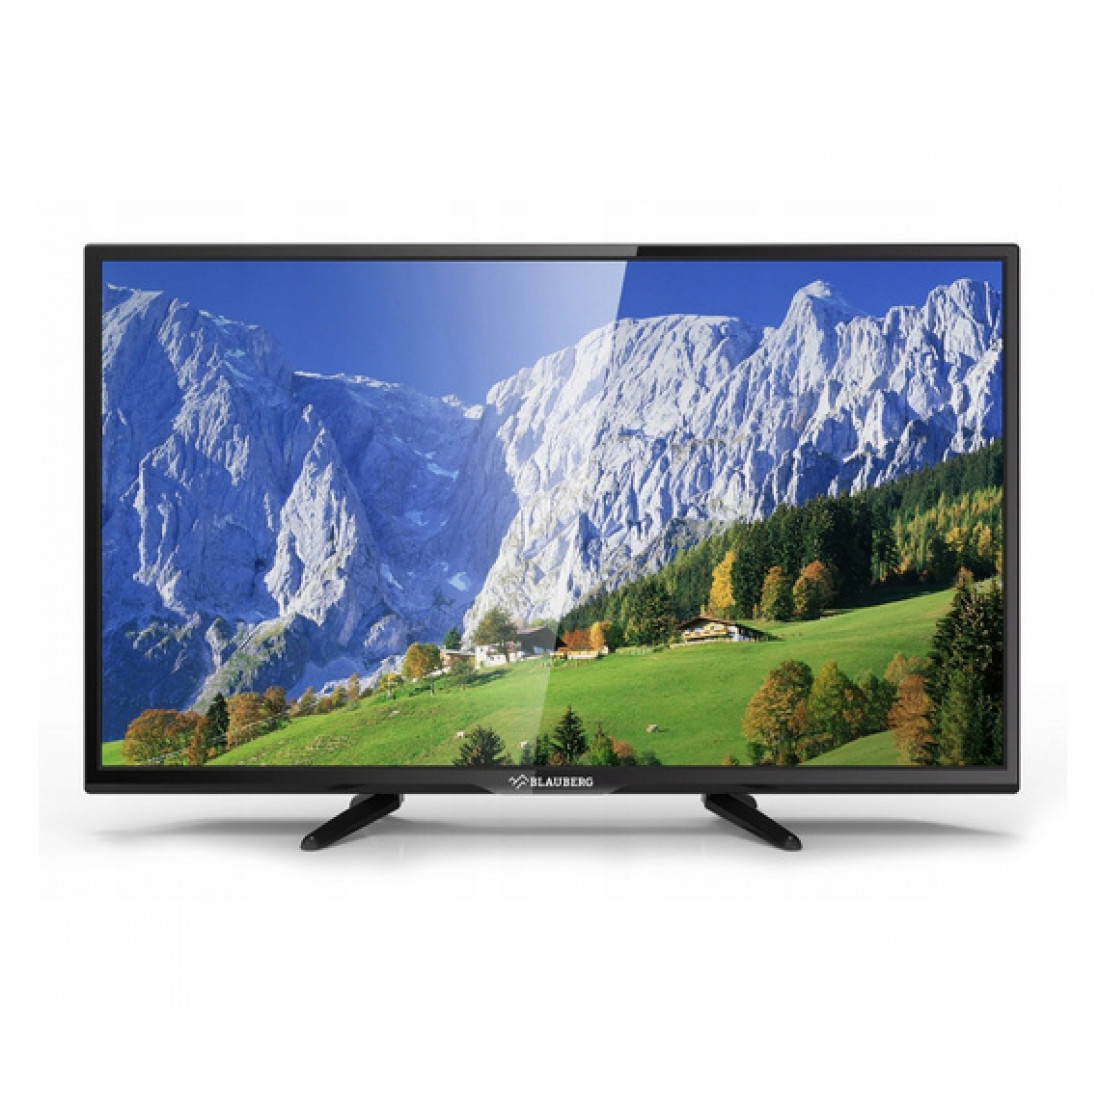 Телевизор Blauberg lfs4005 40" (2017). Старый LCD телевизор Thomson. TV-3204. Телевизор Opera портативный o- TV 5005 R комплектность.